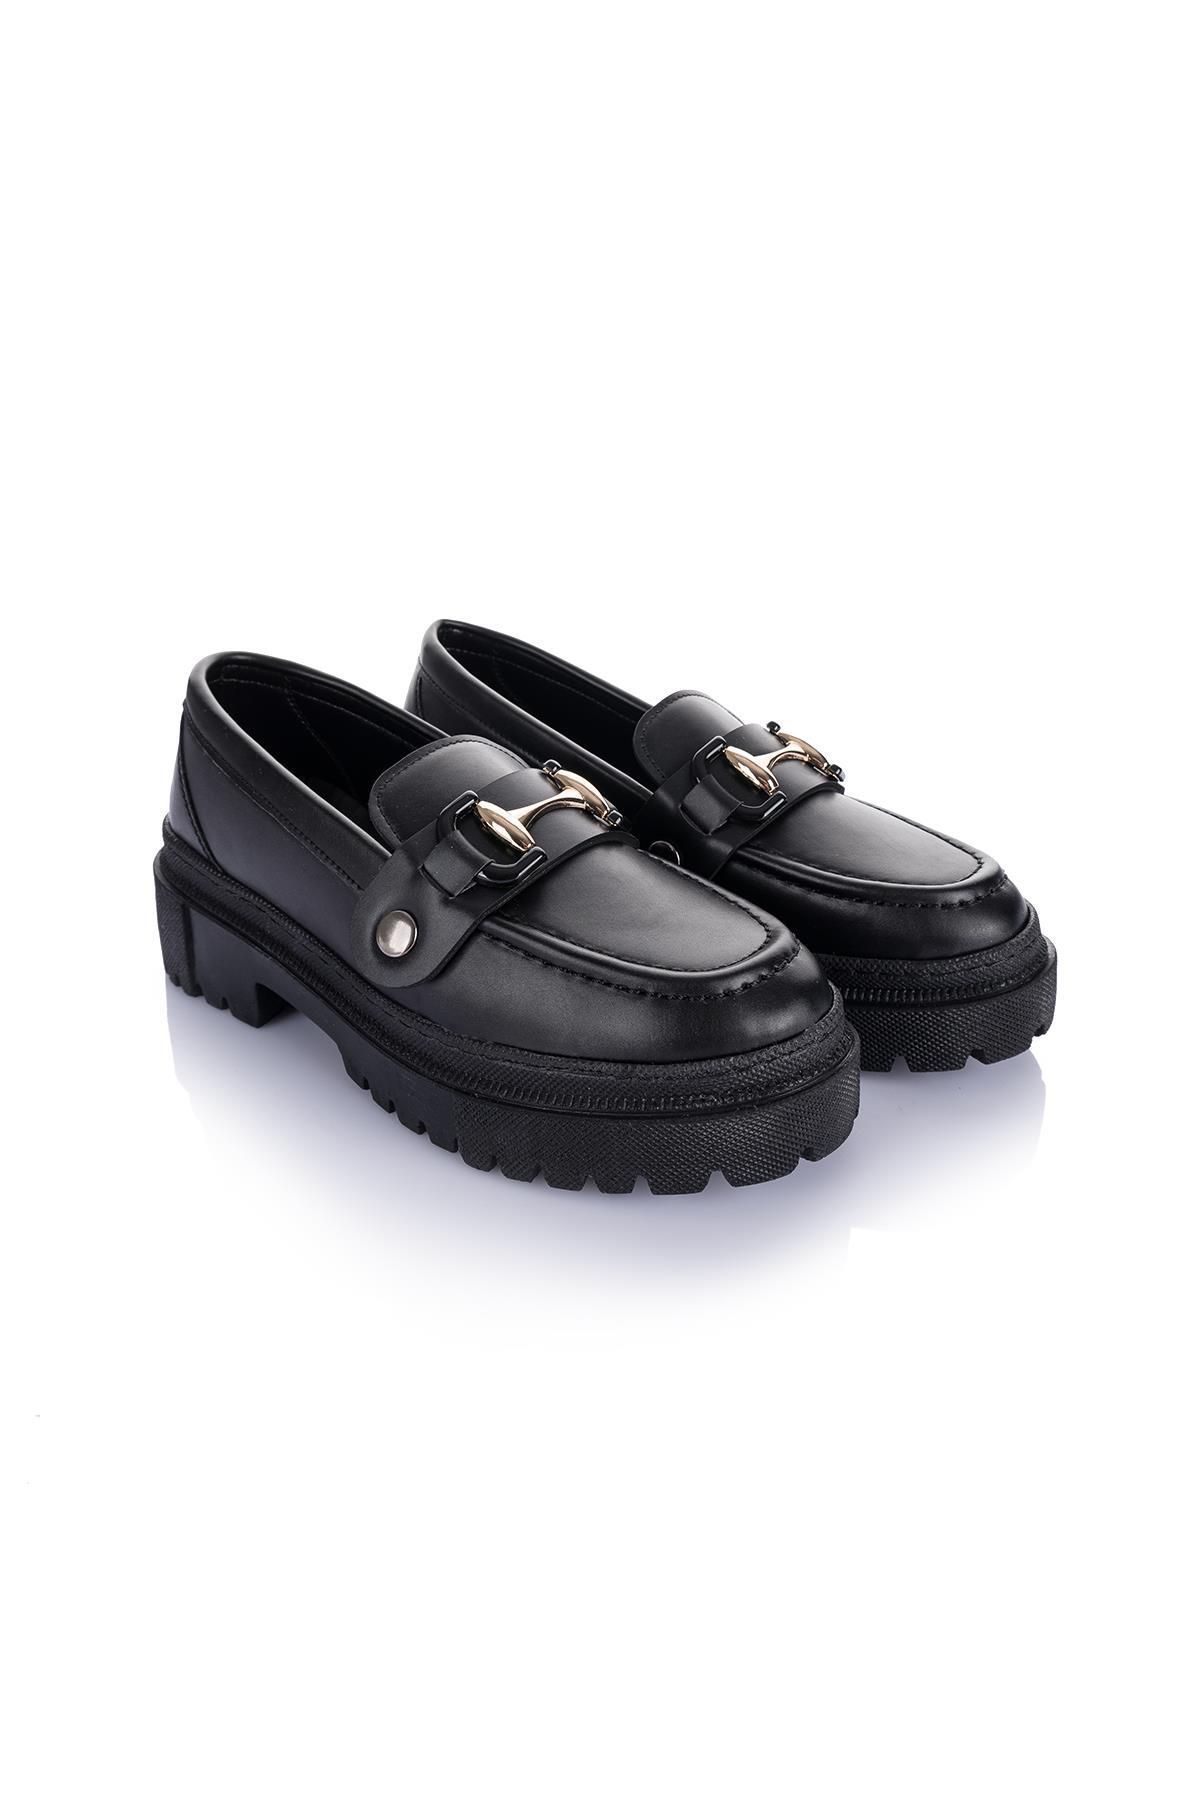 Getcho Edam Çift Tokalı Kadın Siyah Loafer Ayakkabı